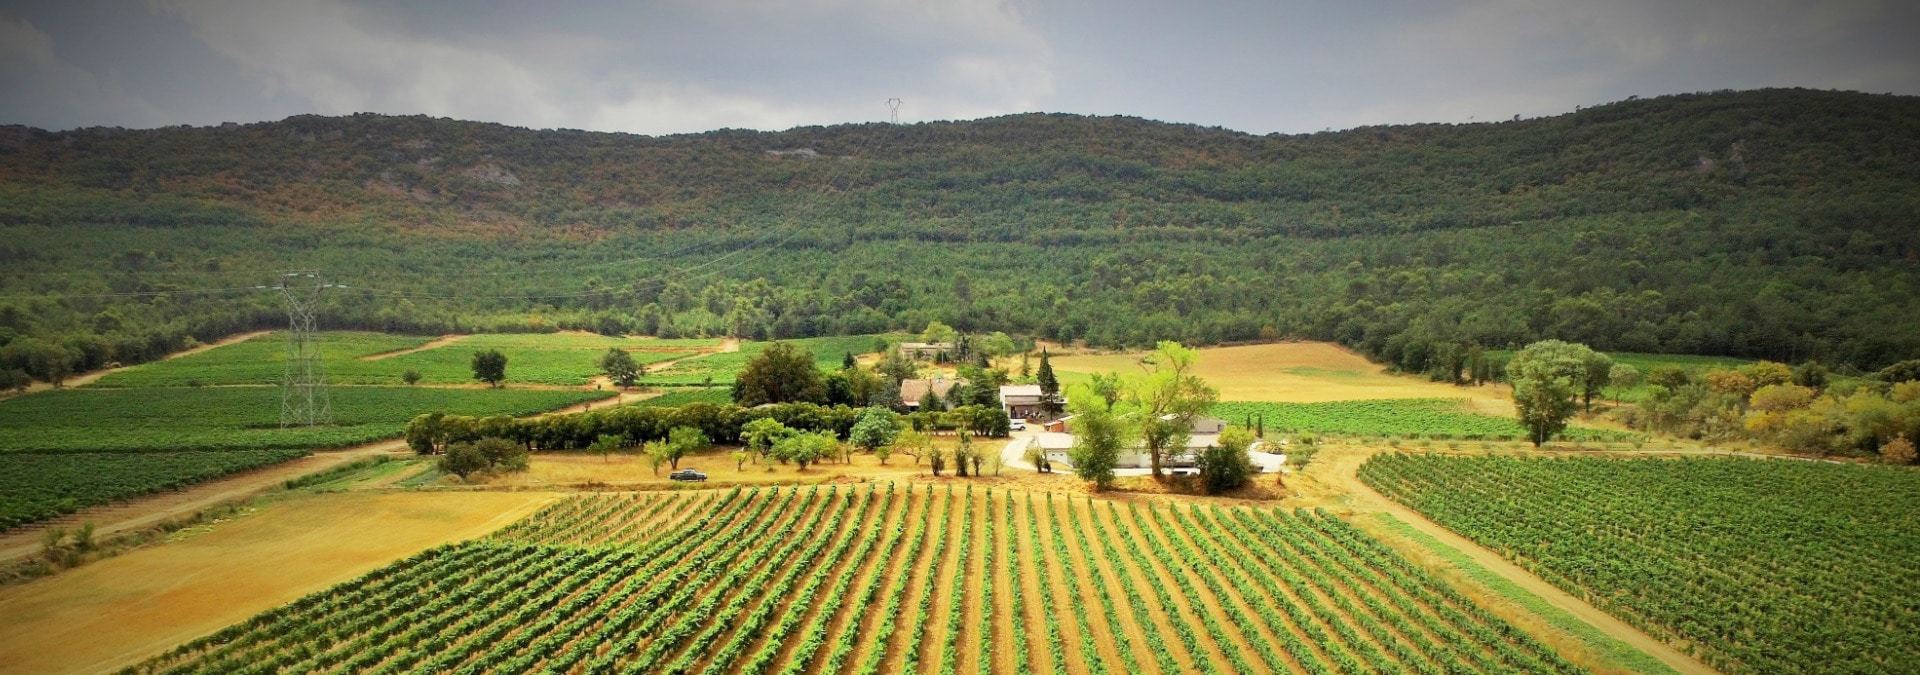 Quels domaines viticoles visiter en Provence ?